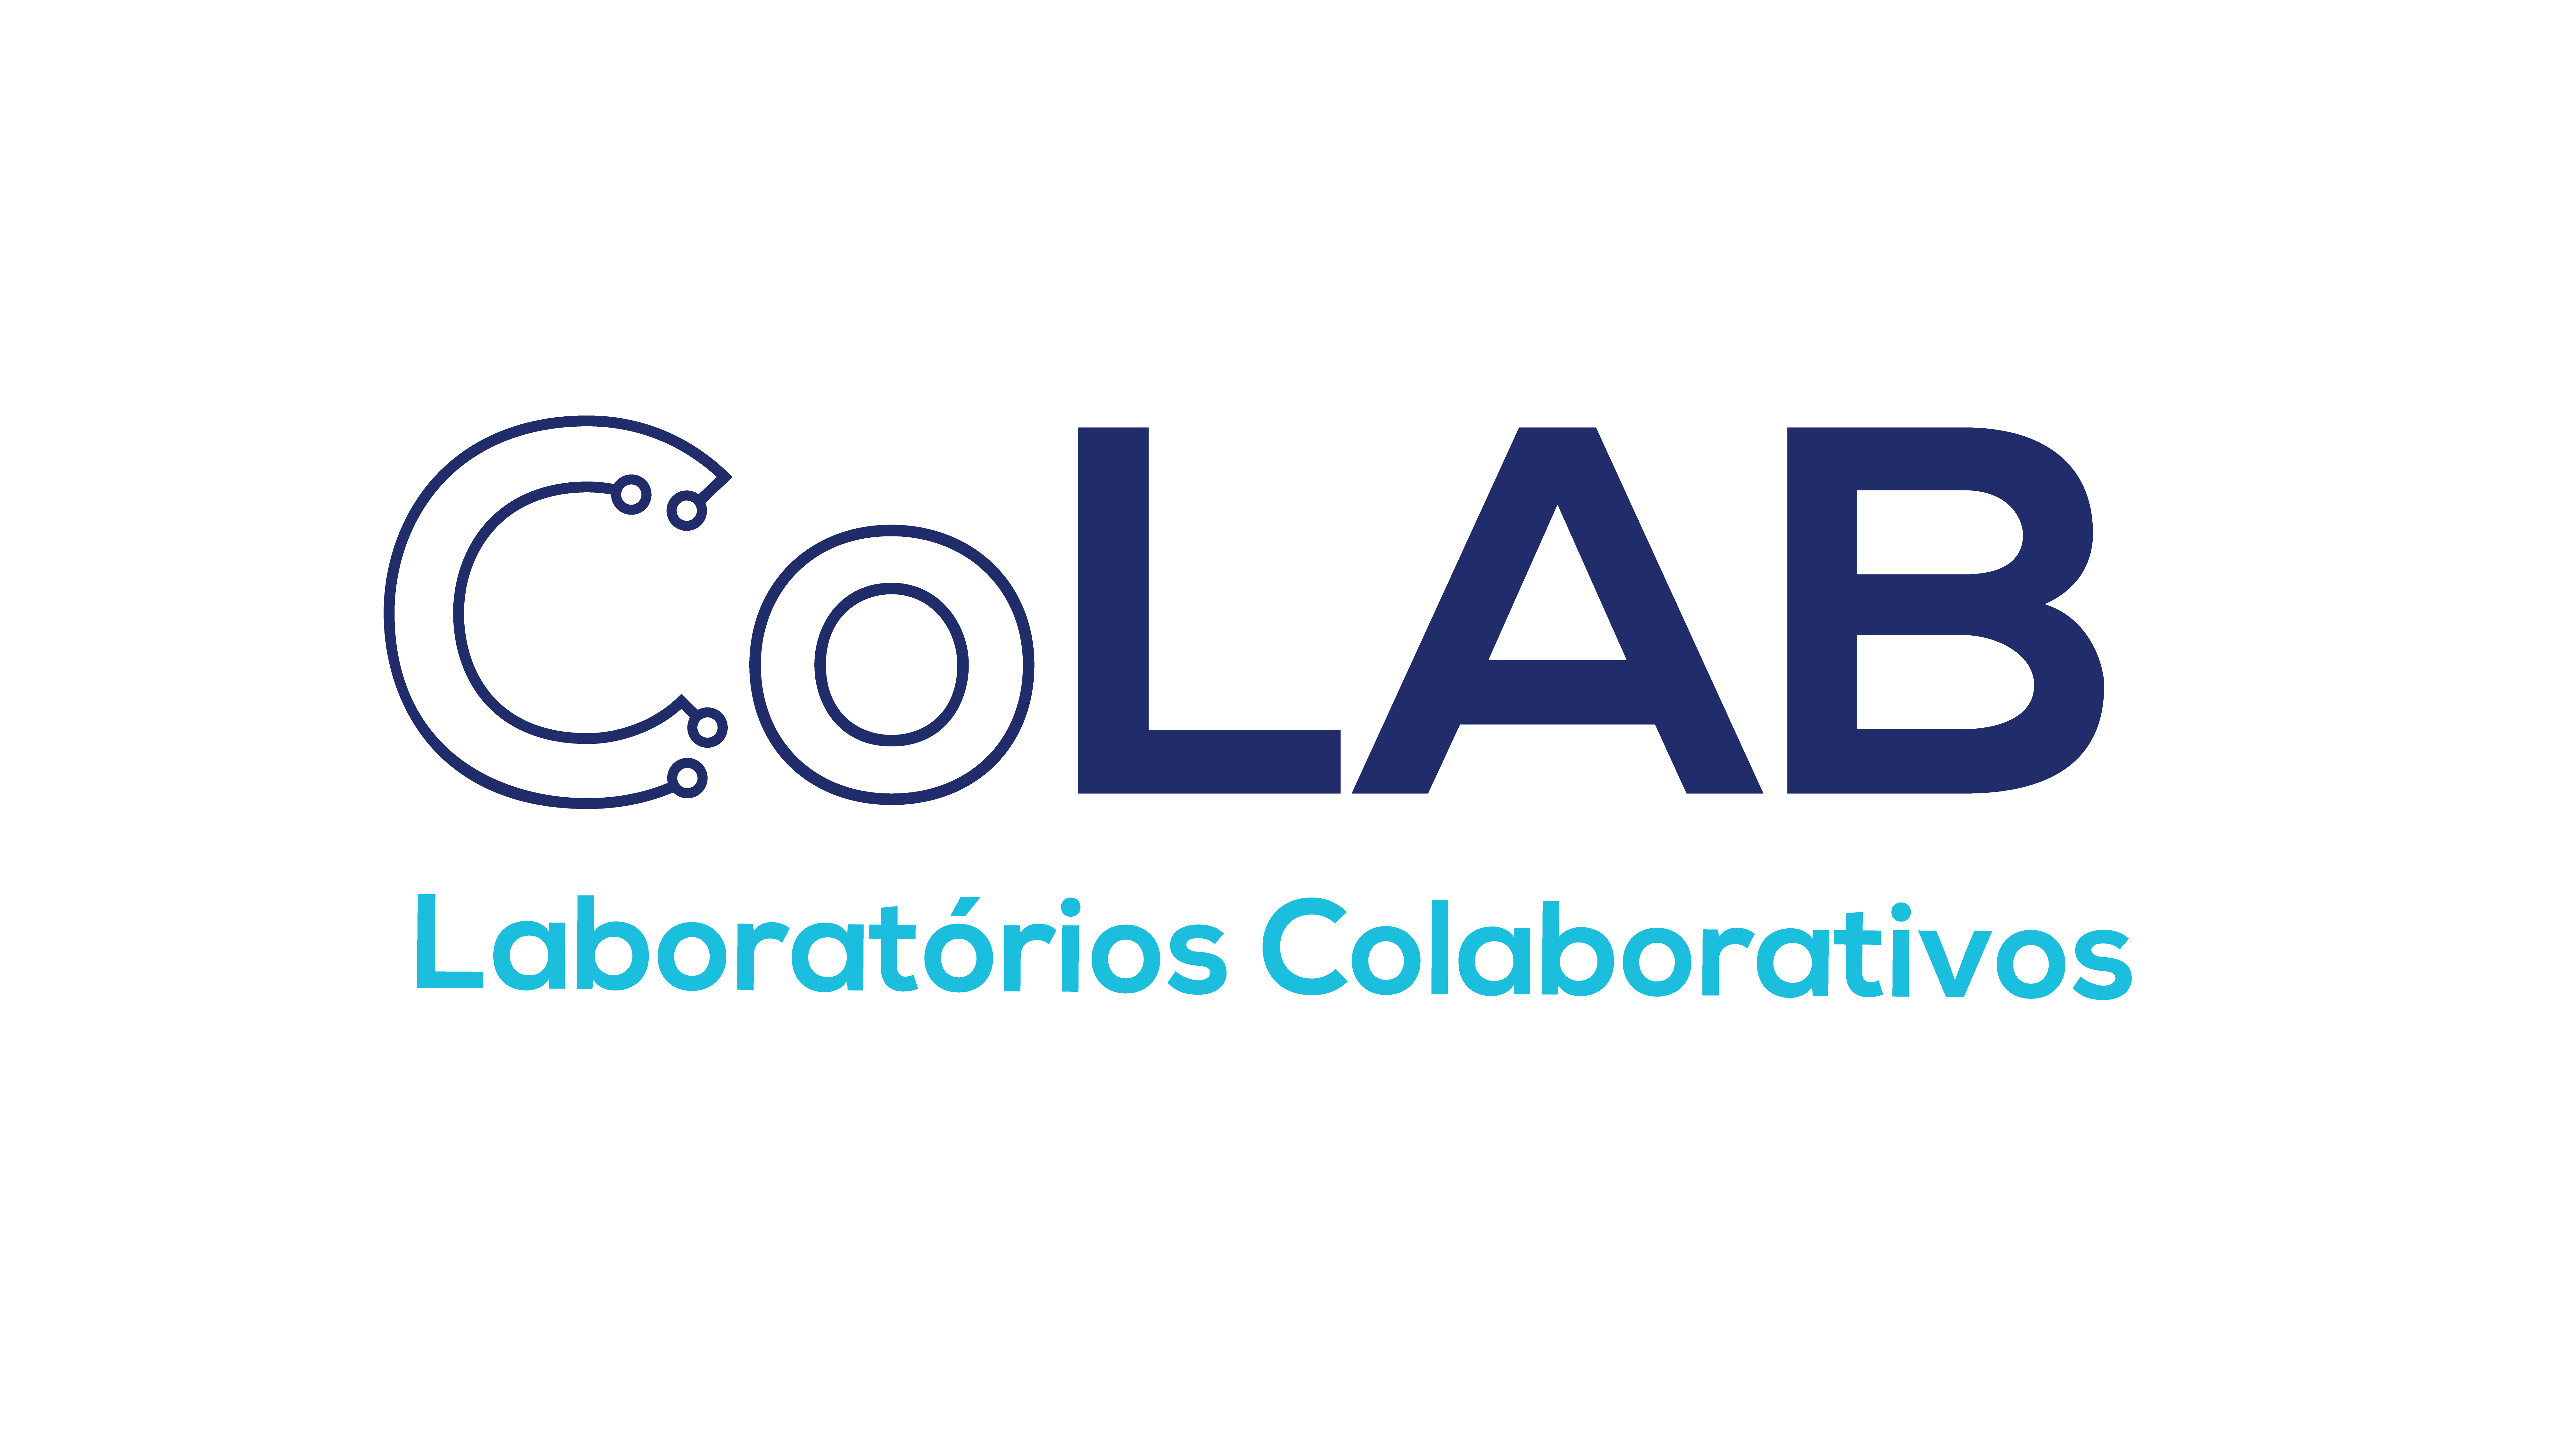 Laboratórios Colaborativos (CoLAB)